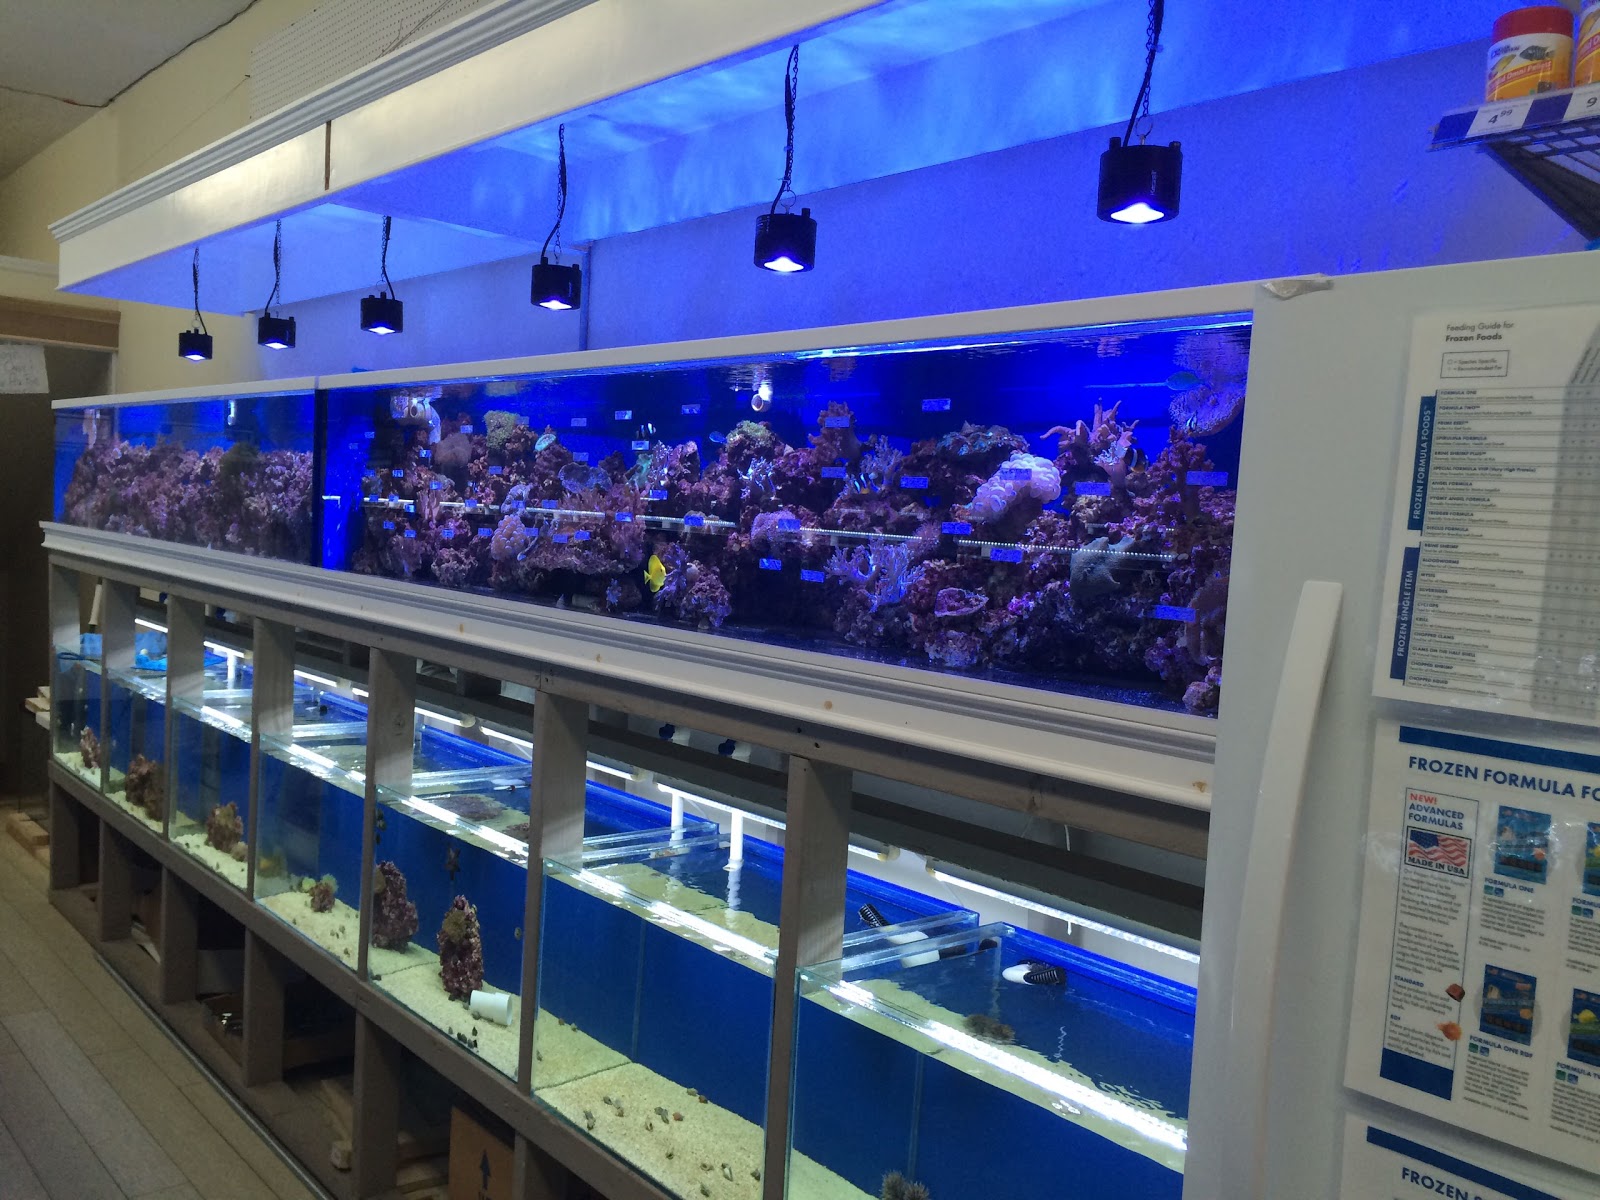 Photo of BluReef Aquarium in Brooklyn City, New York, United States - 7 Picture of Point of interest, Establishment, Store, Pet store, Aquarium